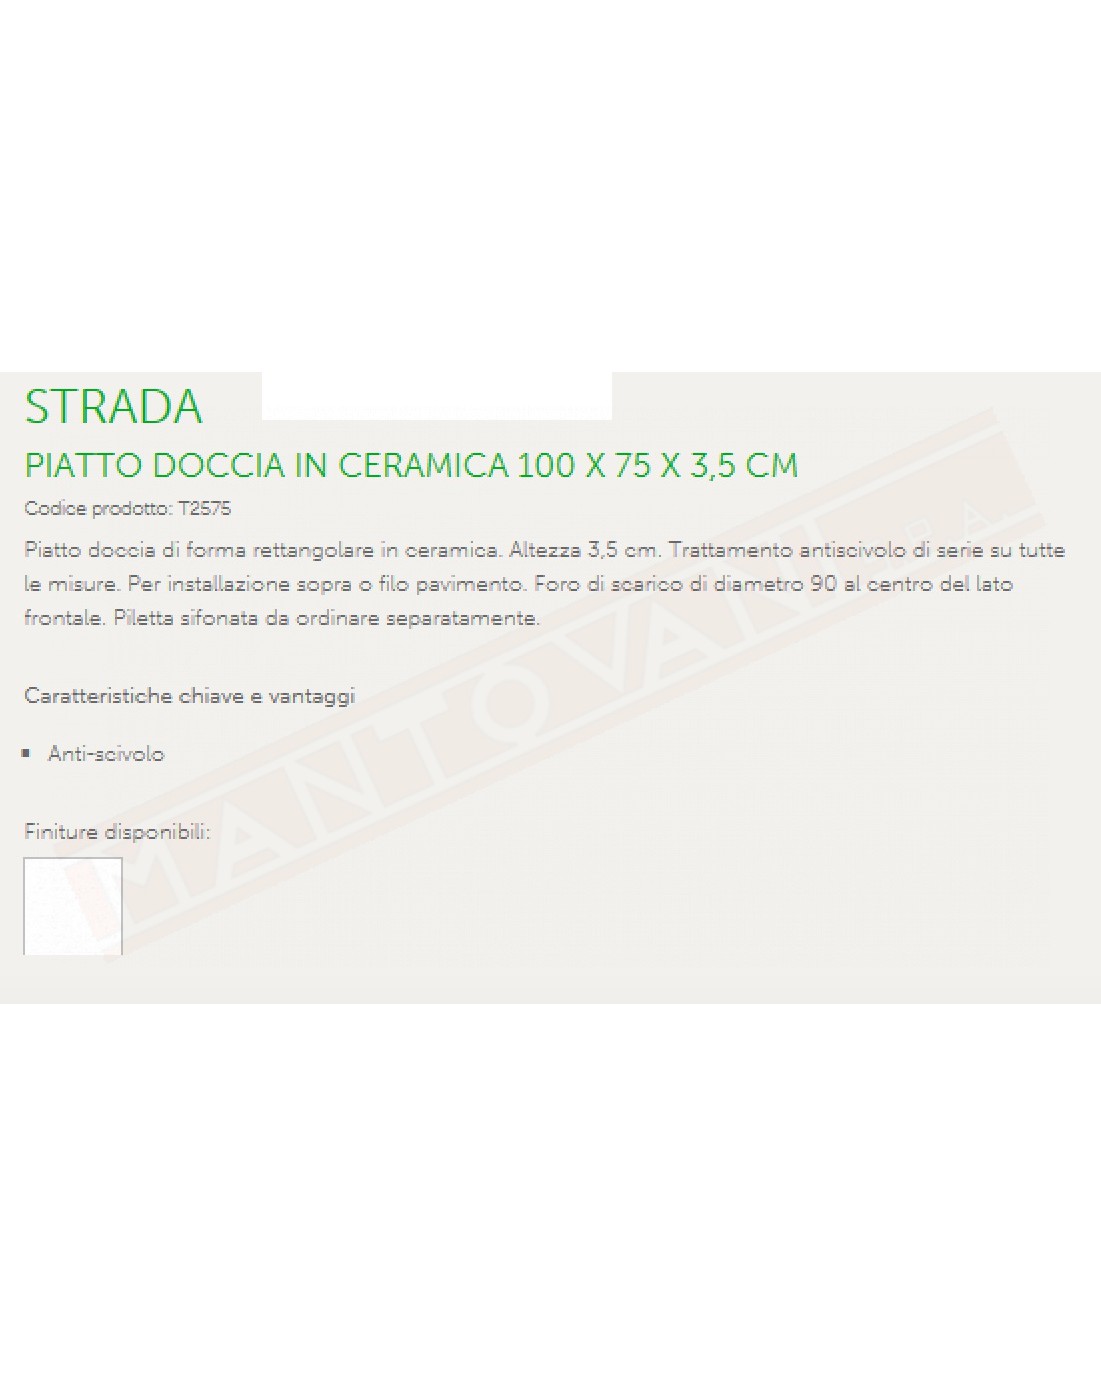 IDEAL STANDARD STRADA PIATTO DOCCIA 100X75 H 3.5 CM CON TRATTAMENTO ANTISCIVOLO FORO DIAMETRO 90 MM AL CENTRO DEL LATO FRONTALE